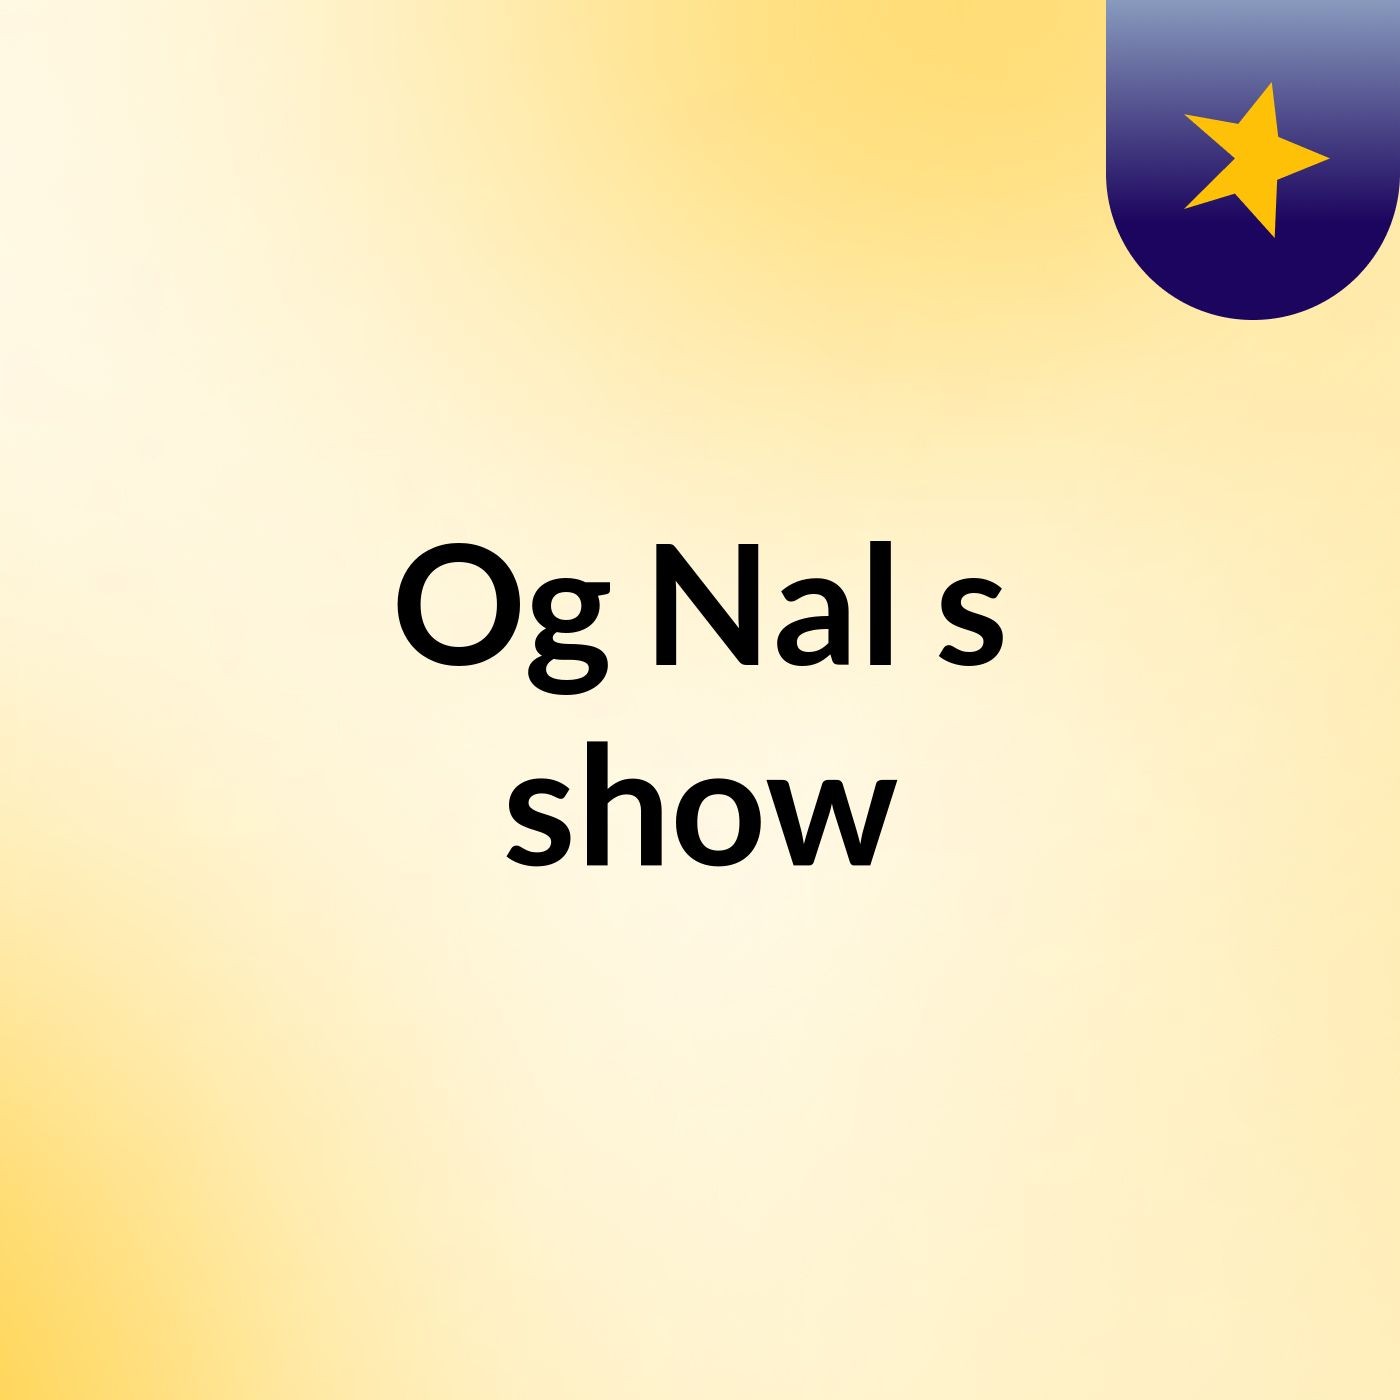 Og Nal's show